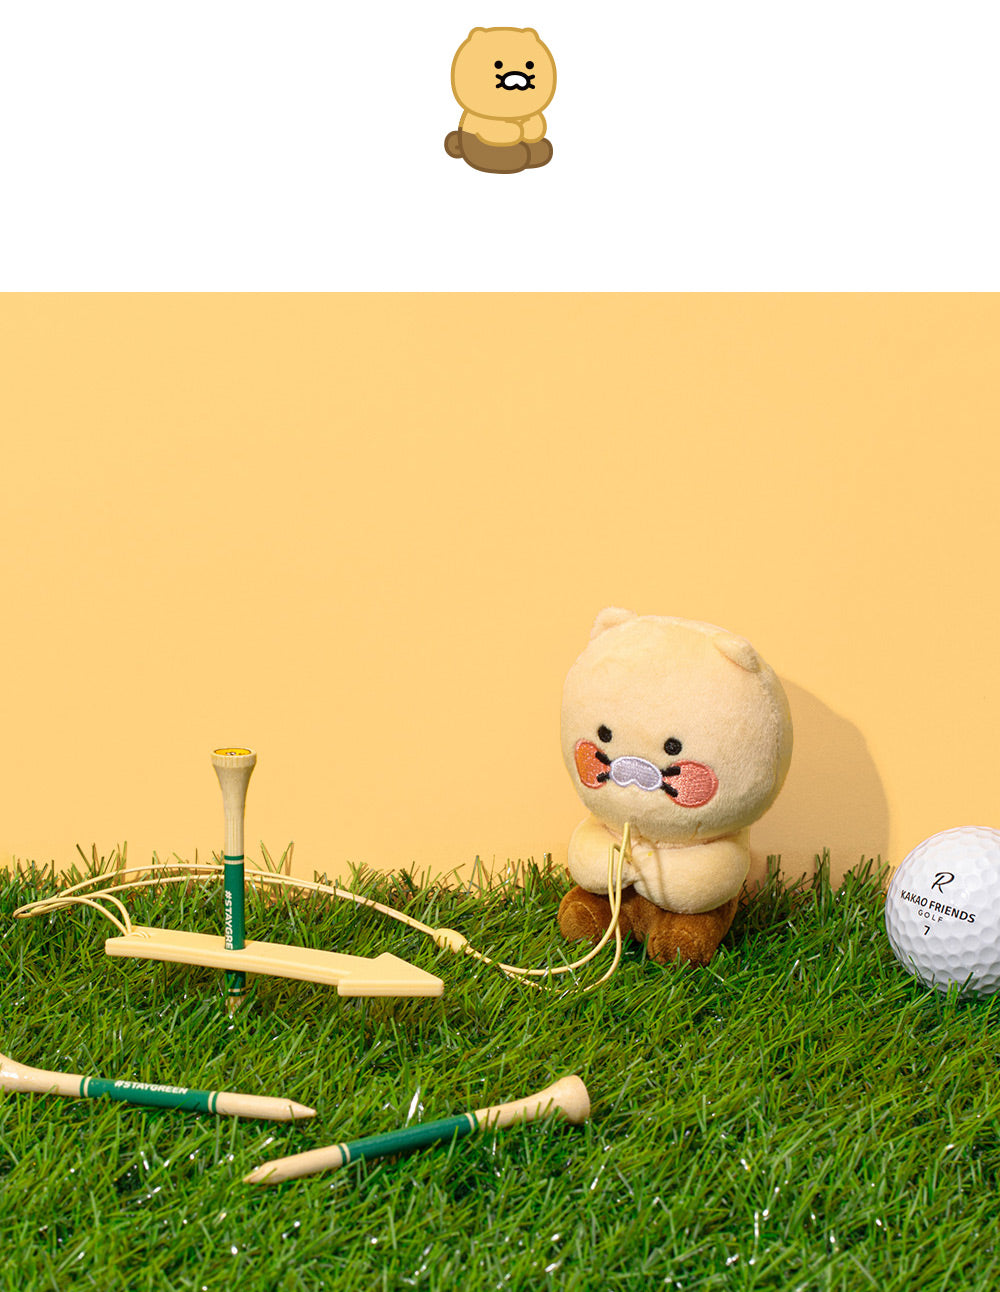 Kakao Friends:: Basic Golf Tee Keeper - Chunsik 베이직 골프티 키퍼 - 춘식이